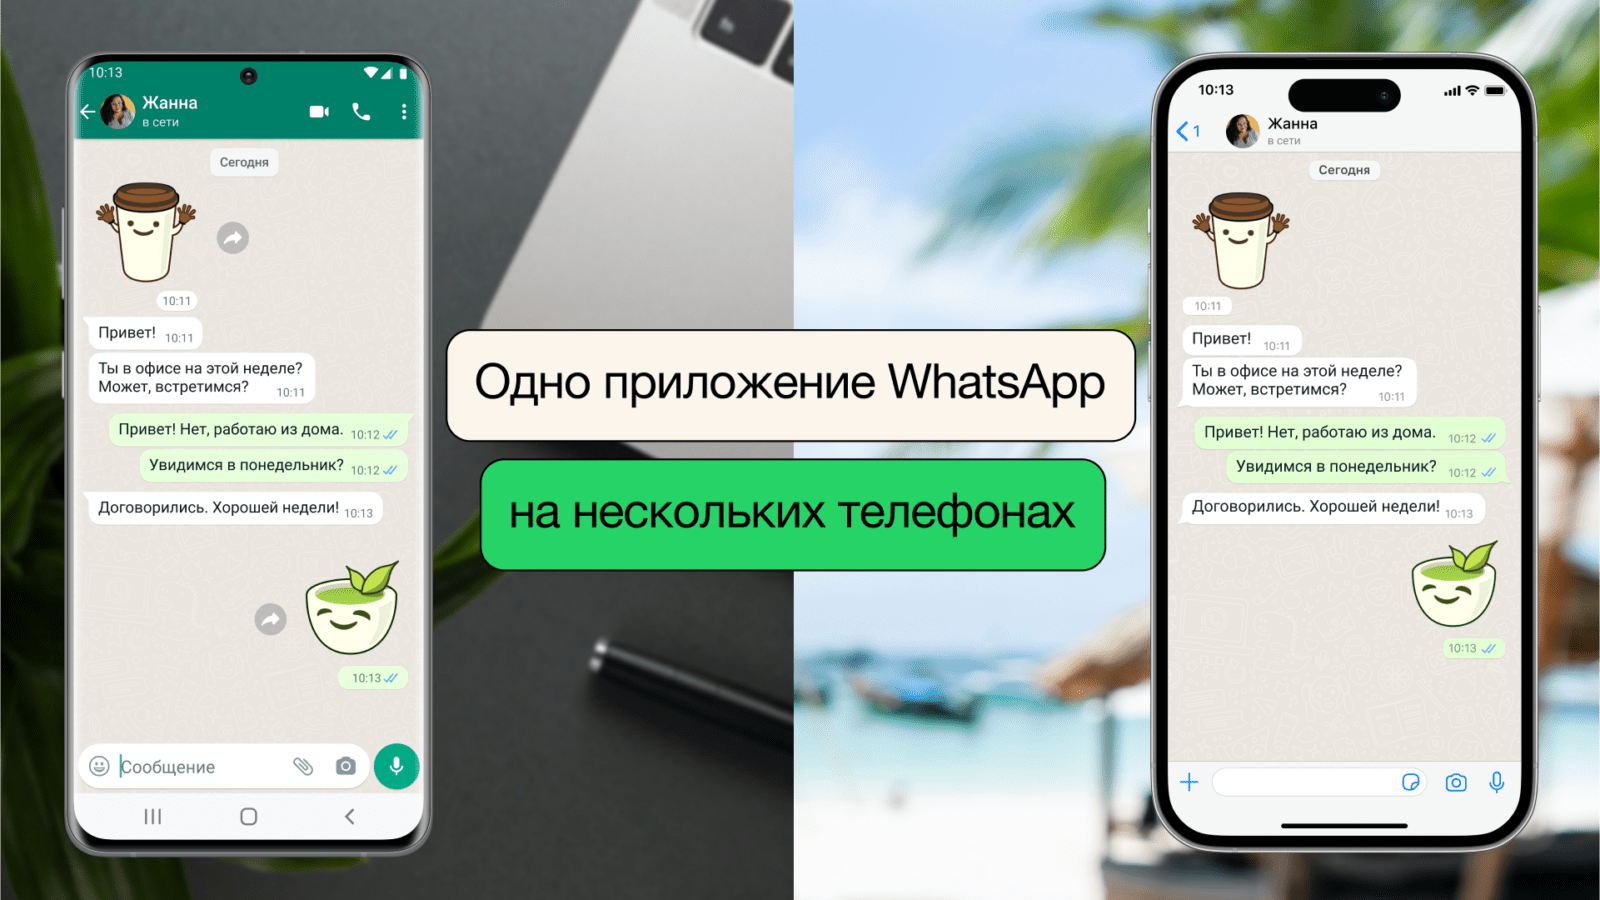 WhatsApp вводит новую функцию: использование одного аккаунта на нескольких телефонах (341681377 959852655329131 6853803379292338566 n)